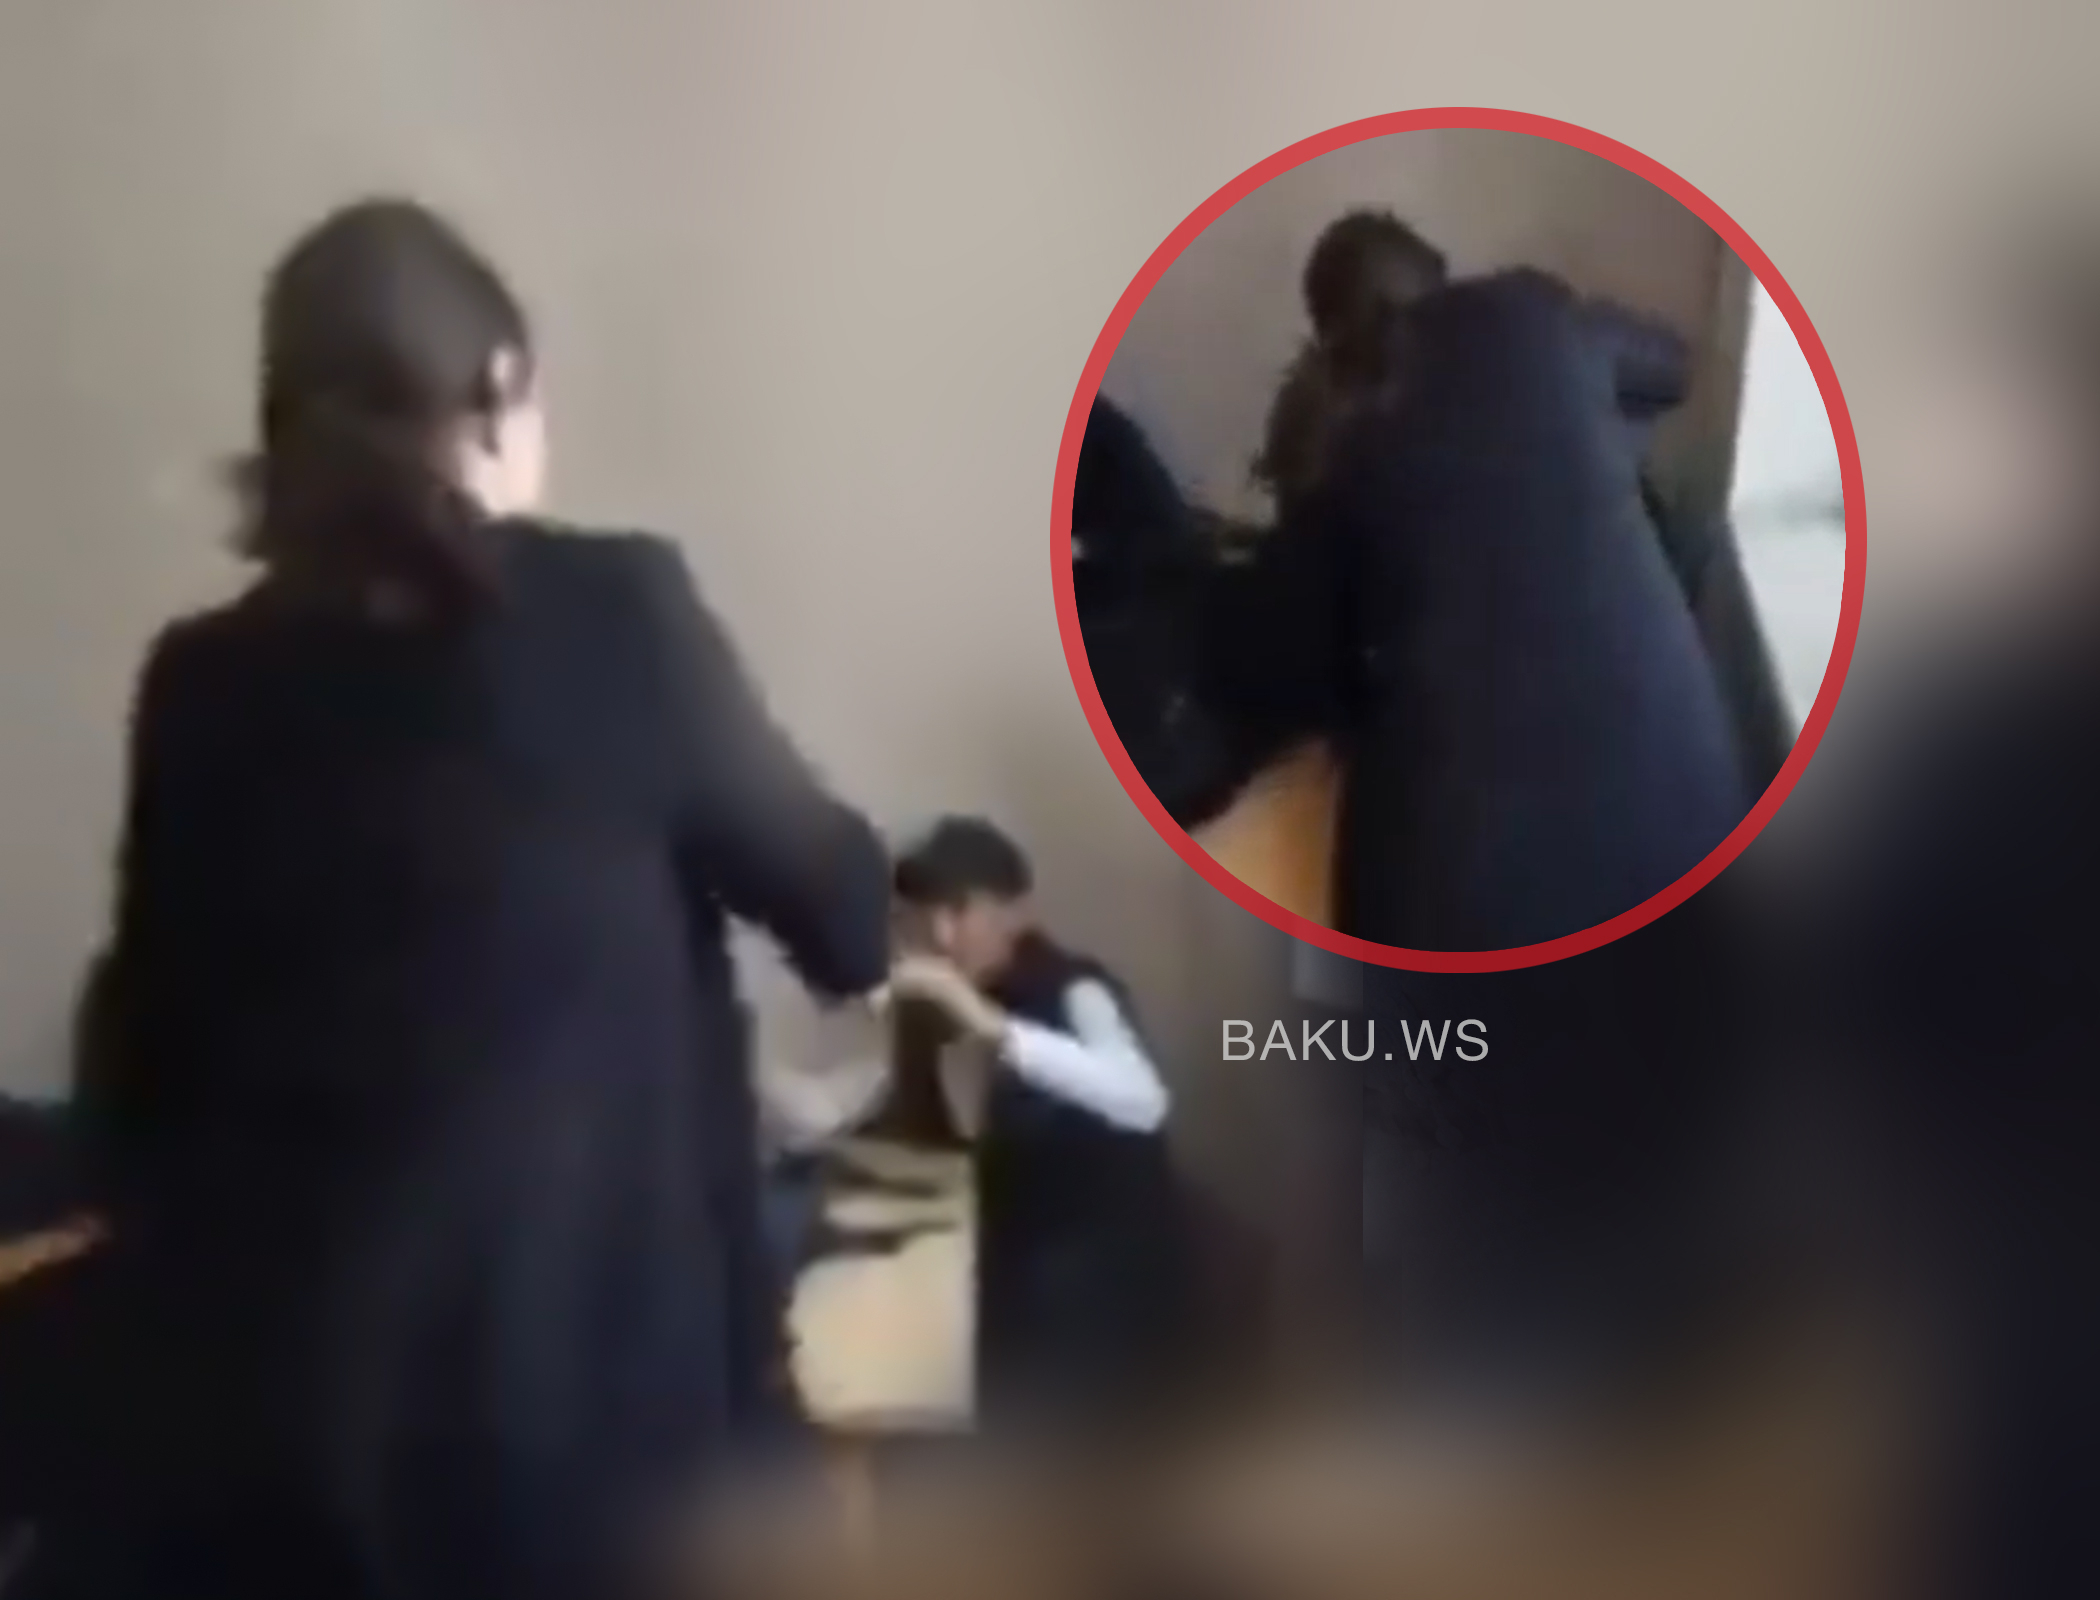 В Азербайджане учитель избила ученика: начато расследование - ВИДЕО